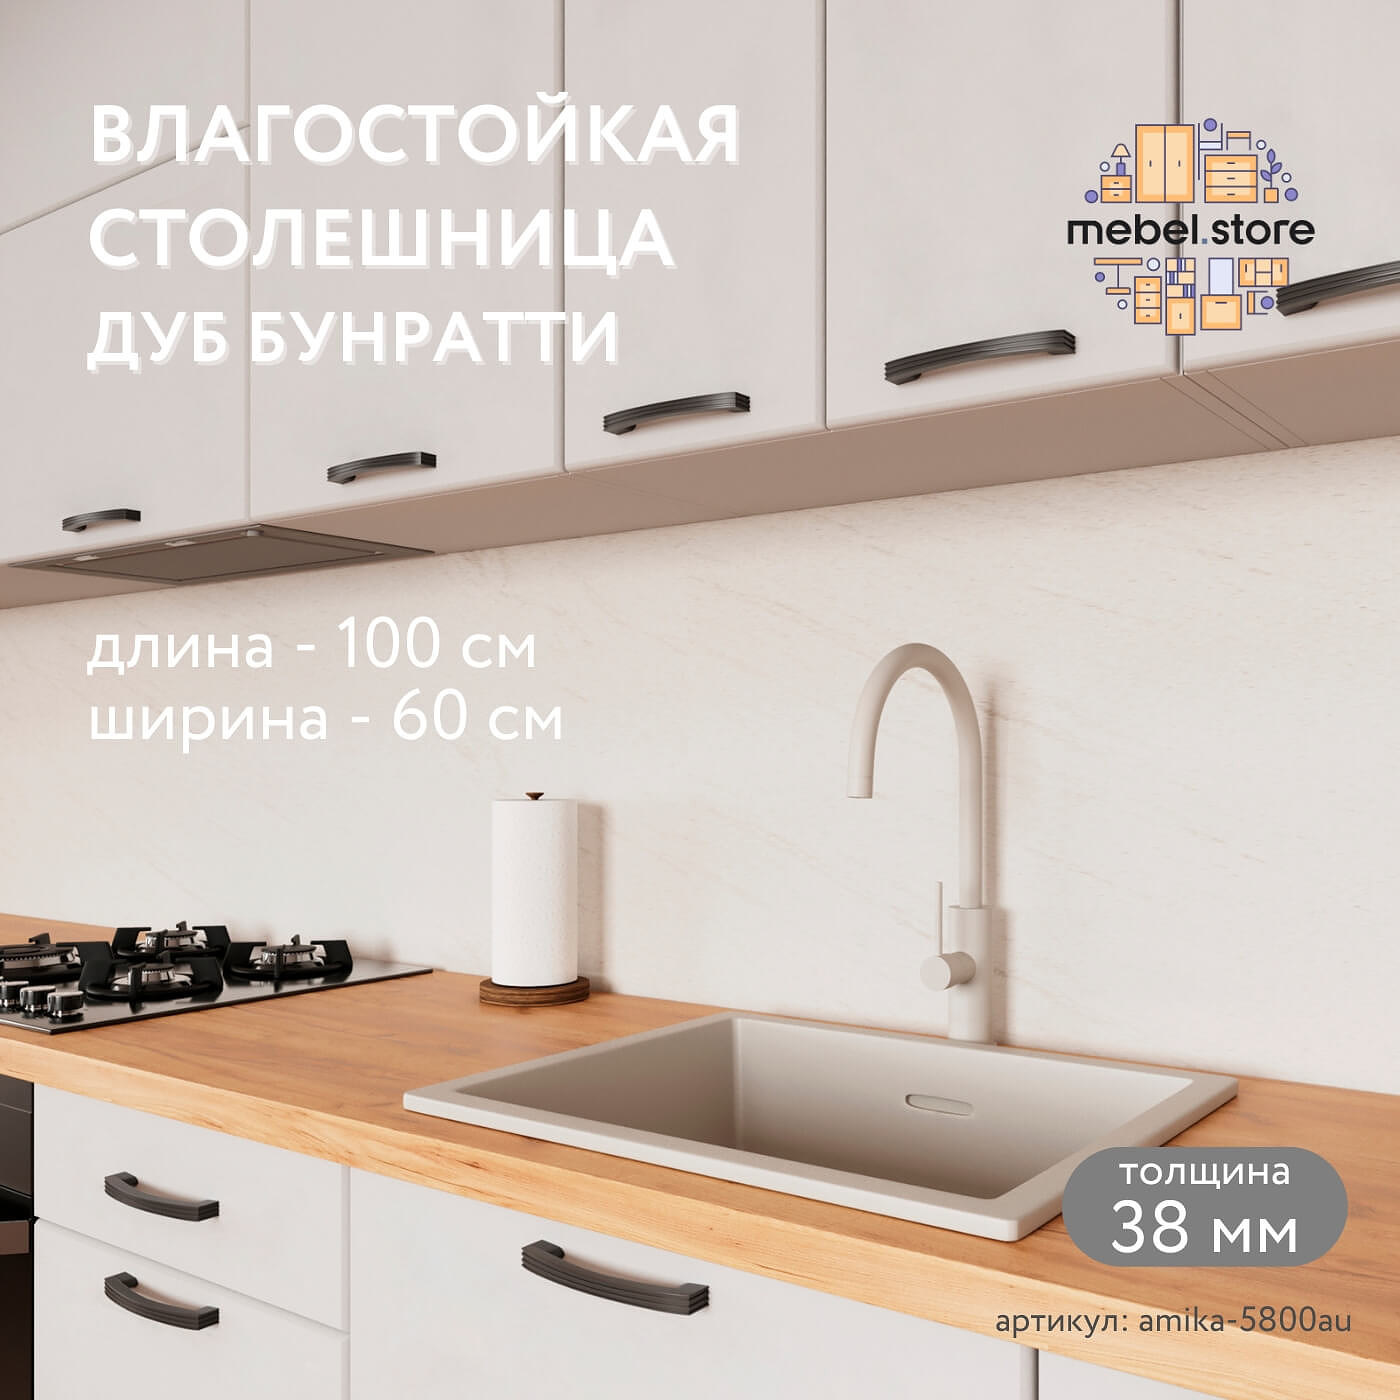 Столешница Амика-5800au минимализм для кухни - фото 1 large